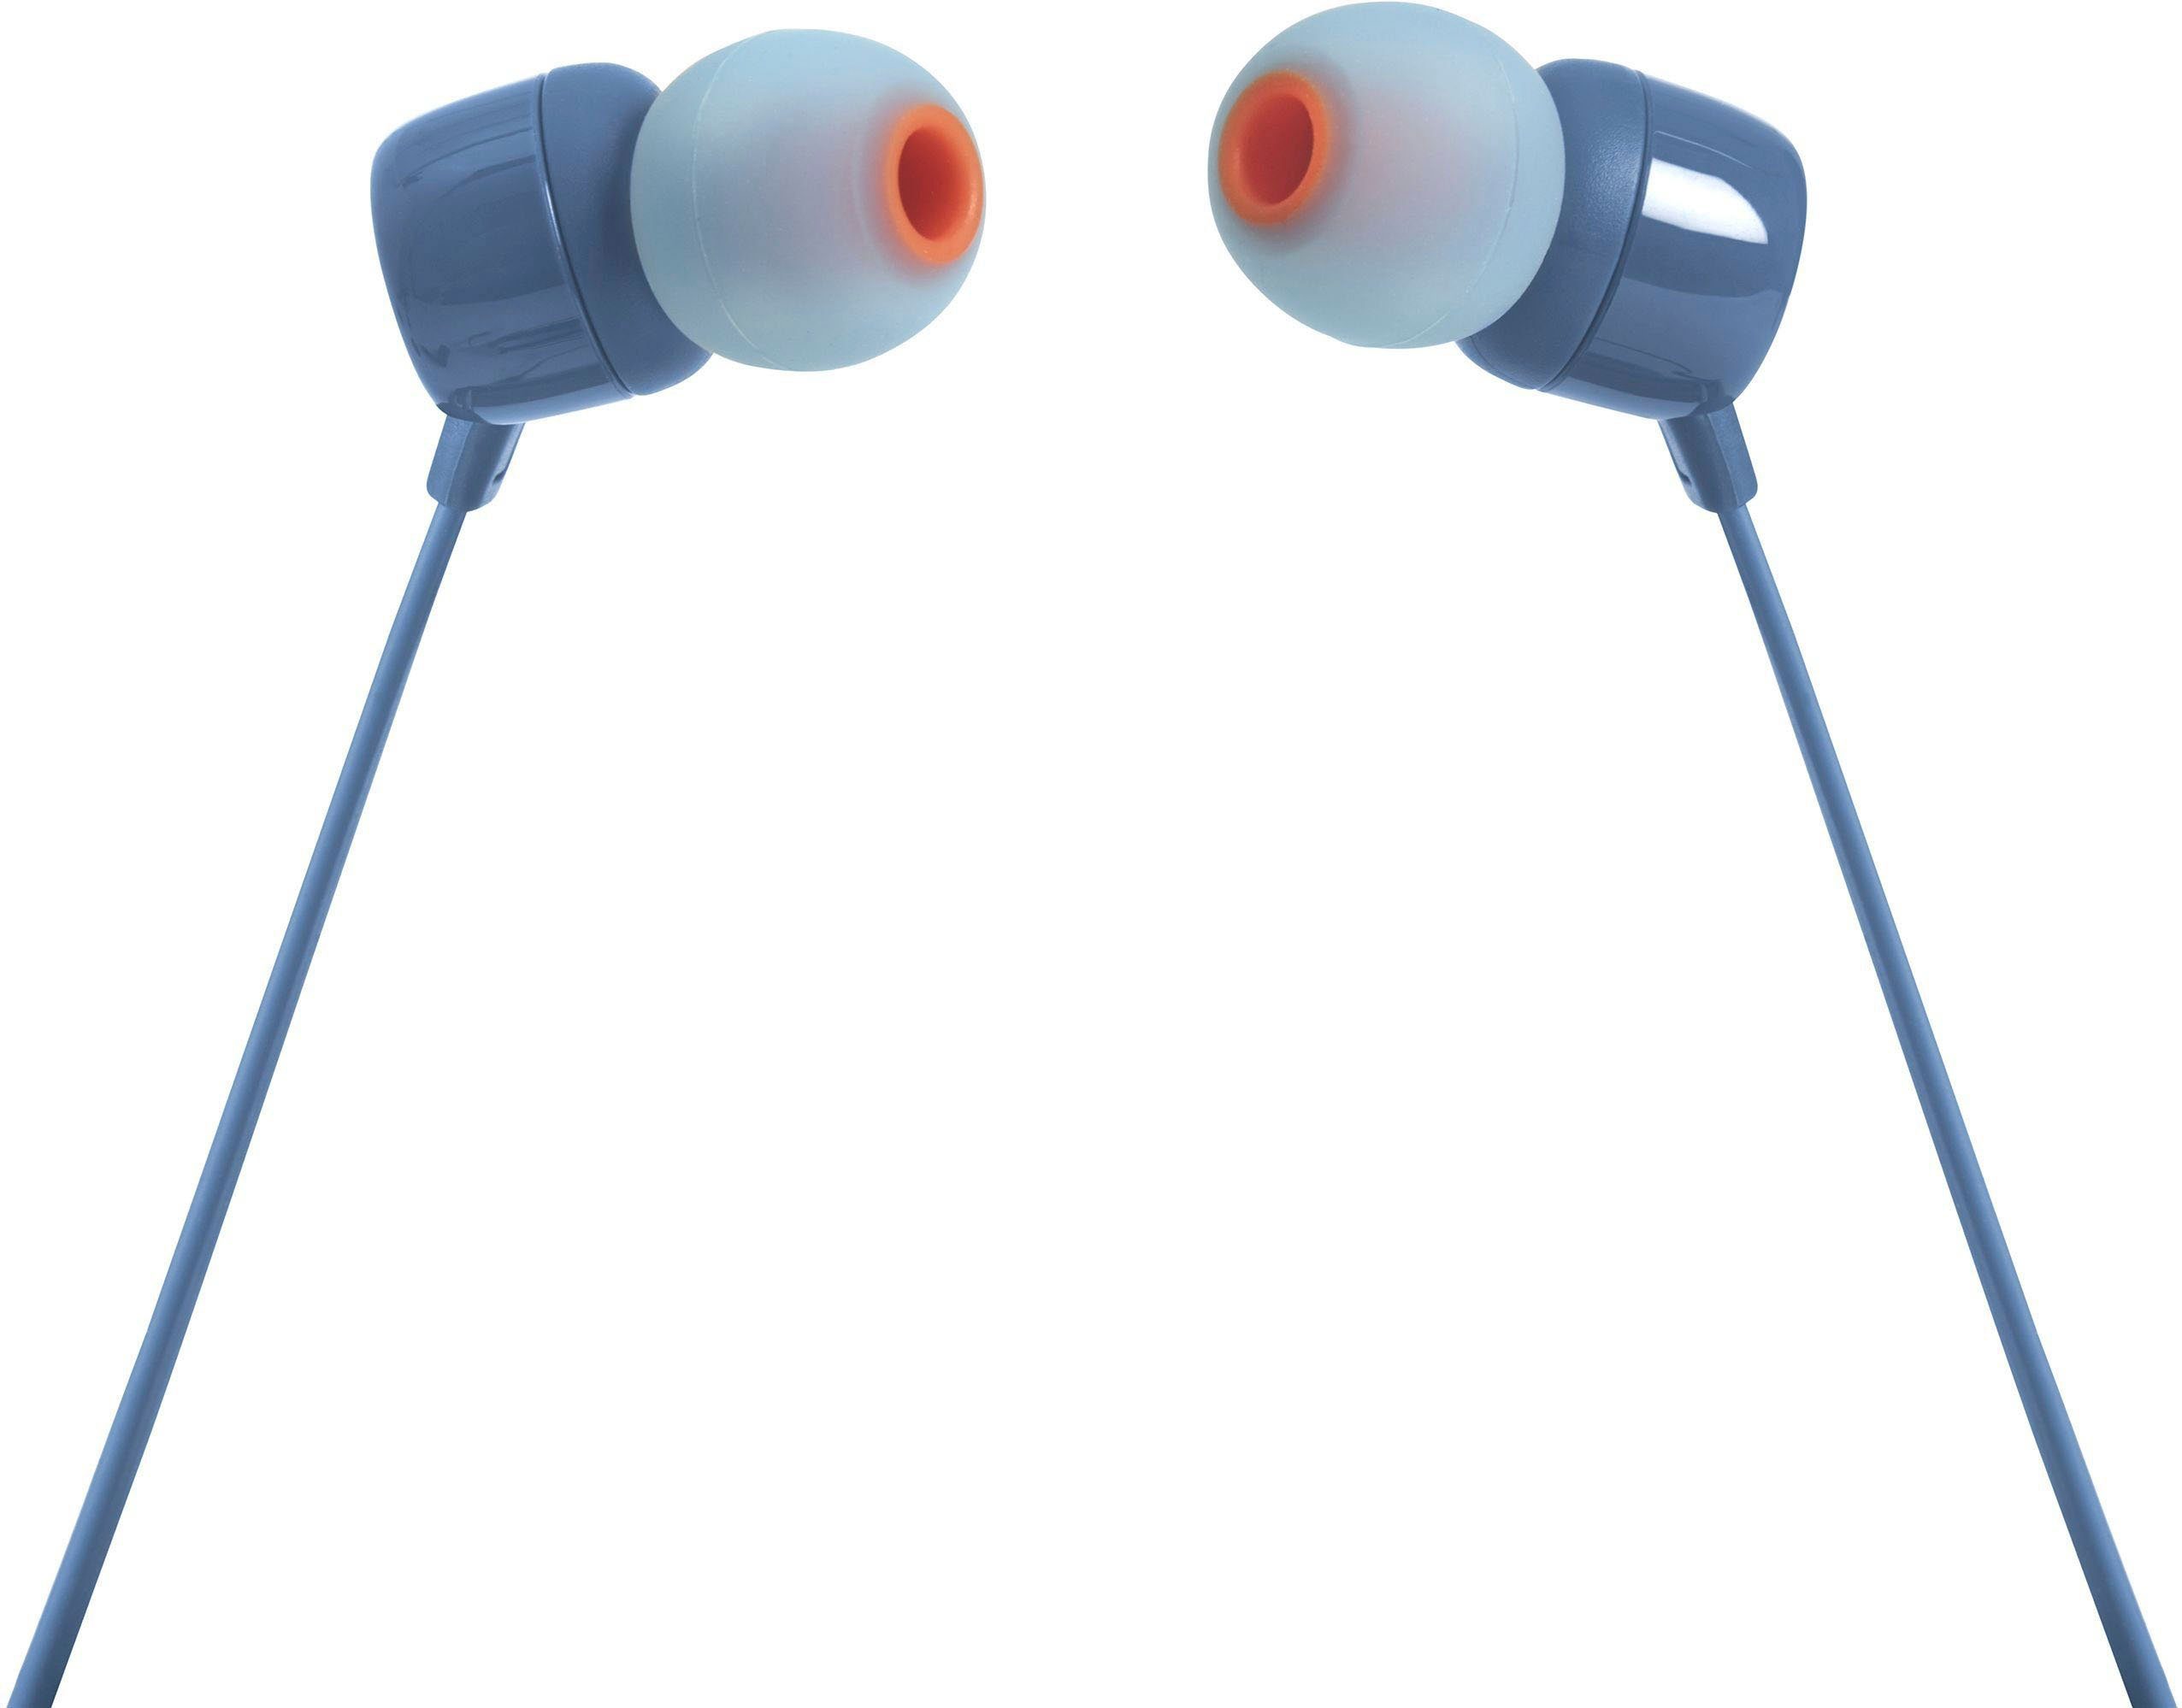 JBL »T110« In-Ear-Kopfhörer online kaufen | OTTO